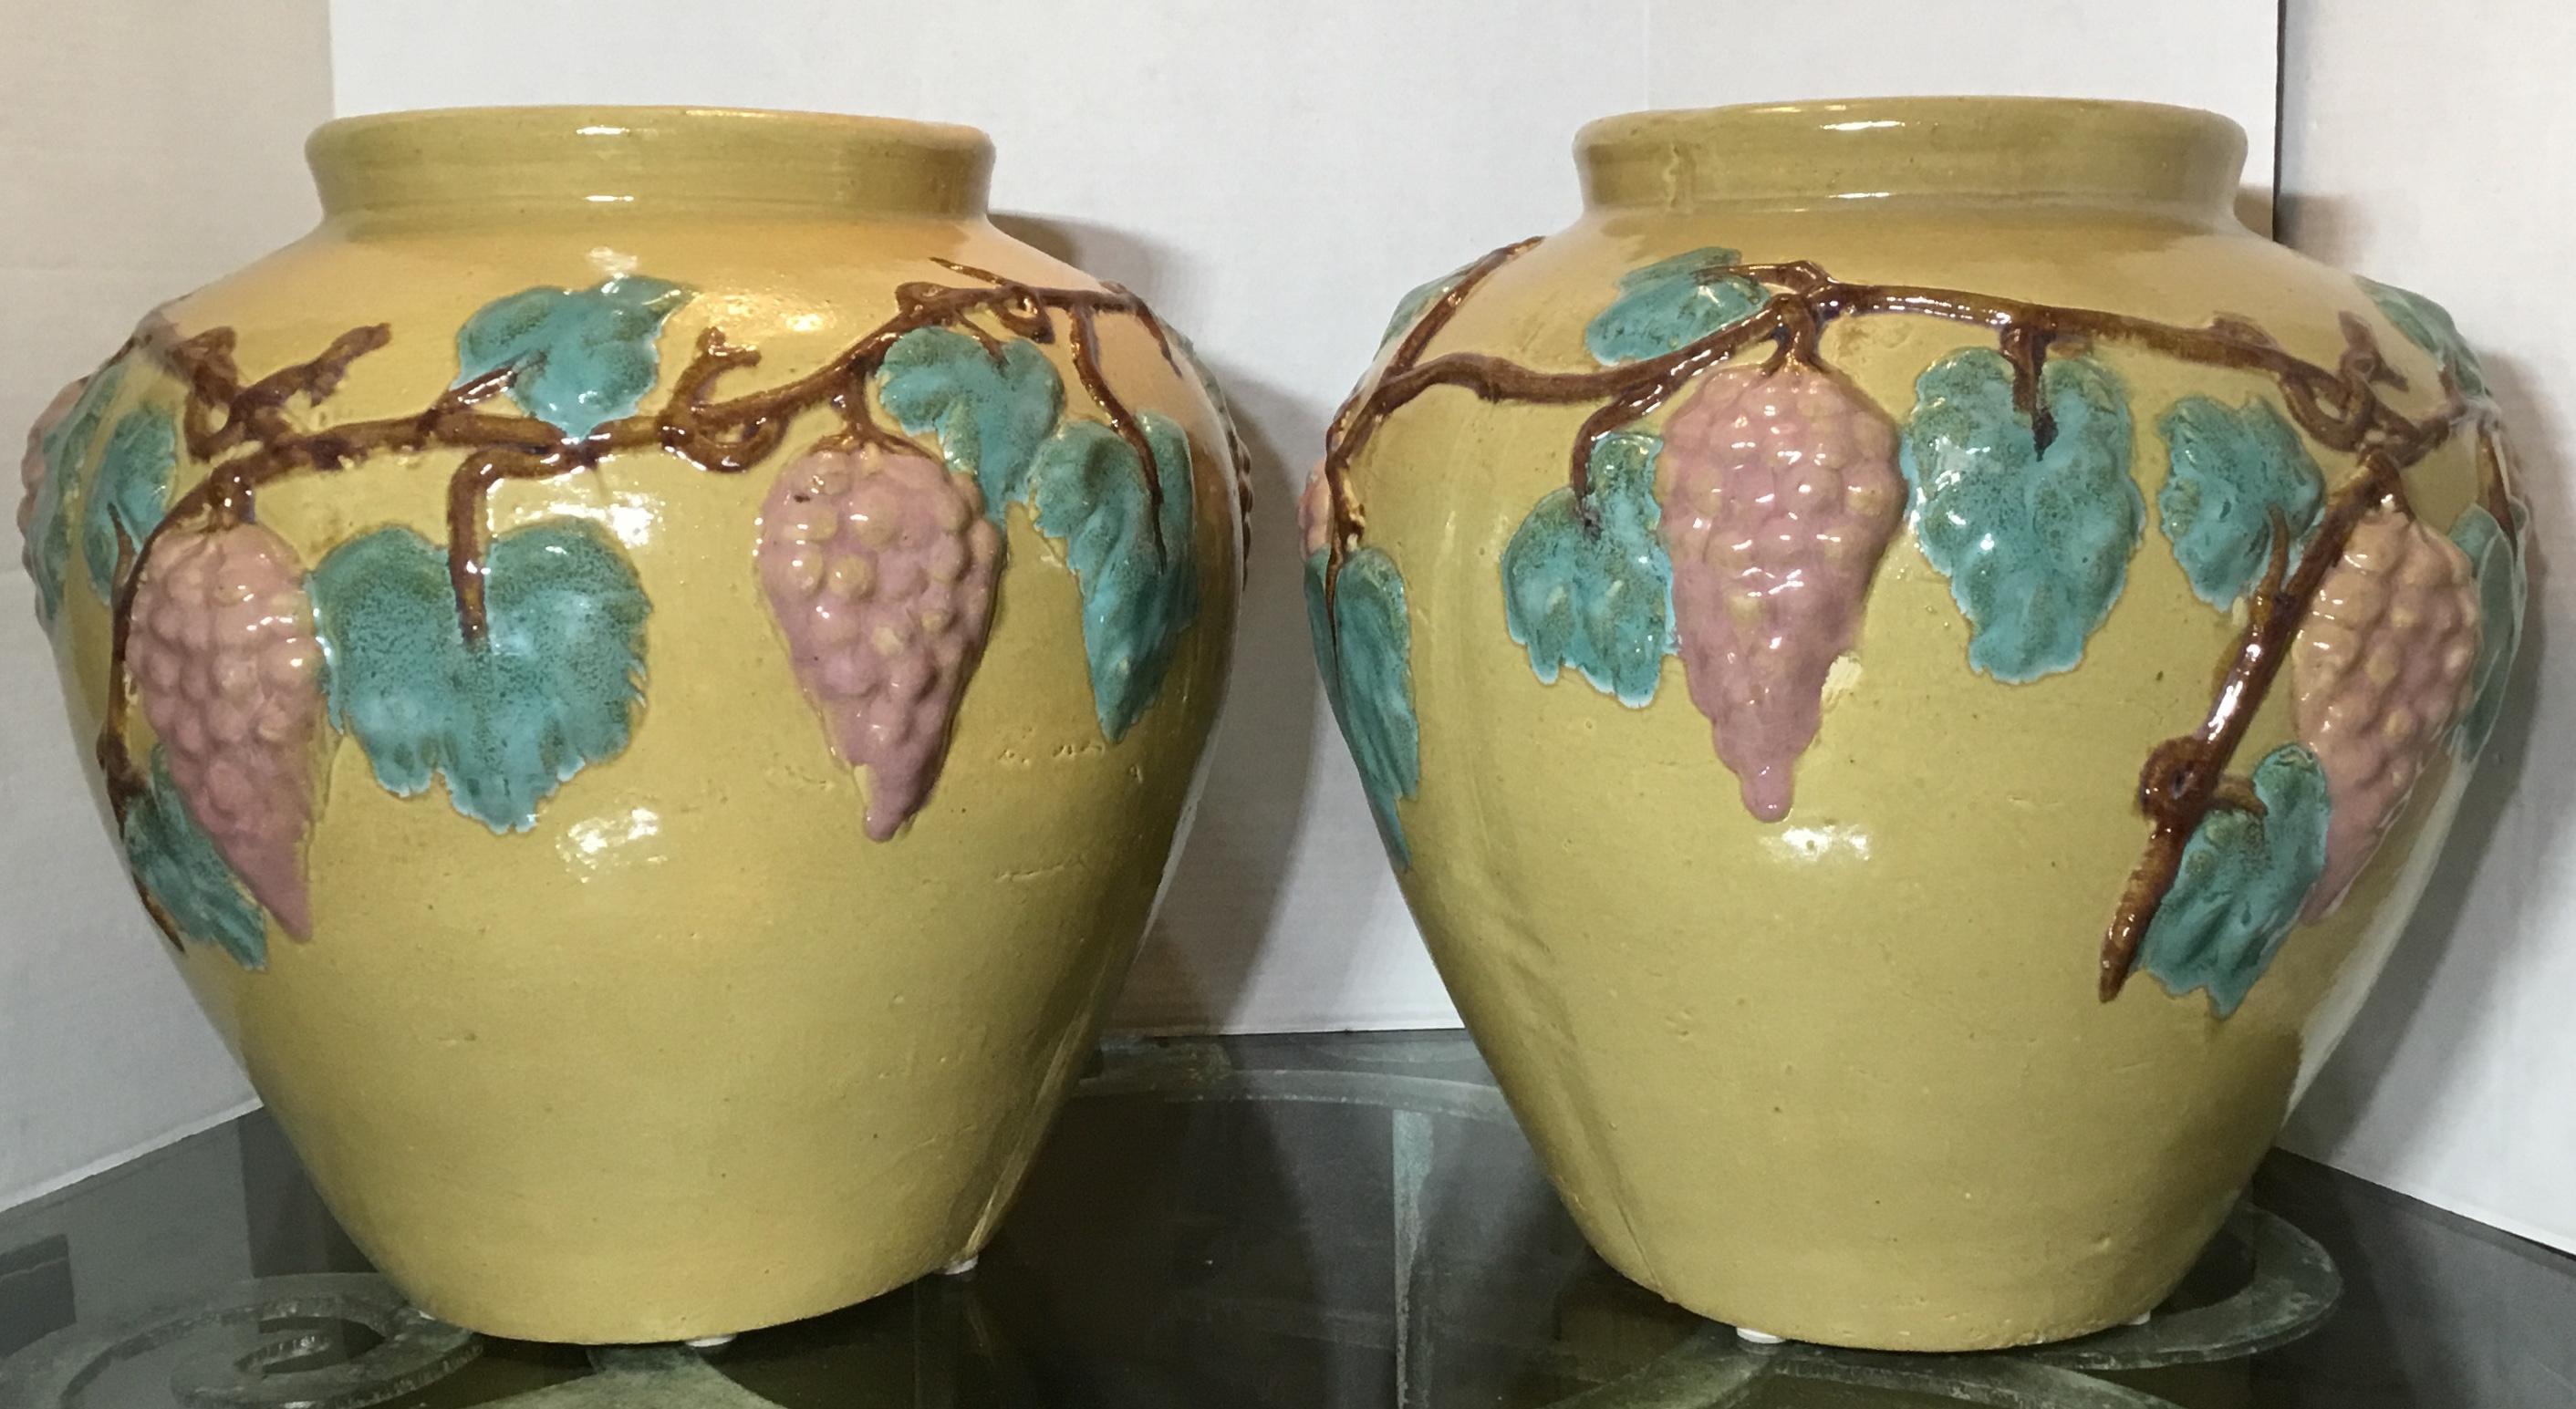 Außergewöhnliches Paar Vasen oder Pflanzgefäße aus Keramik, handbemalt und glasiert mit Weinrebenmotiven rundum, schöne Farben. Kann als Pflanzgefäß oder einfach als dekoratives Vasenpaar verwendet werden.
Die Öffnungsgröße beträgt 7